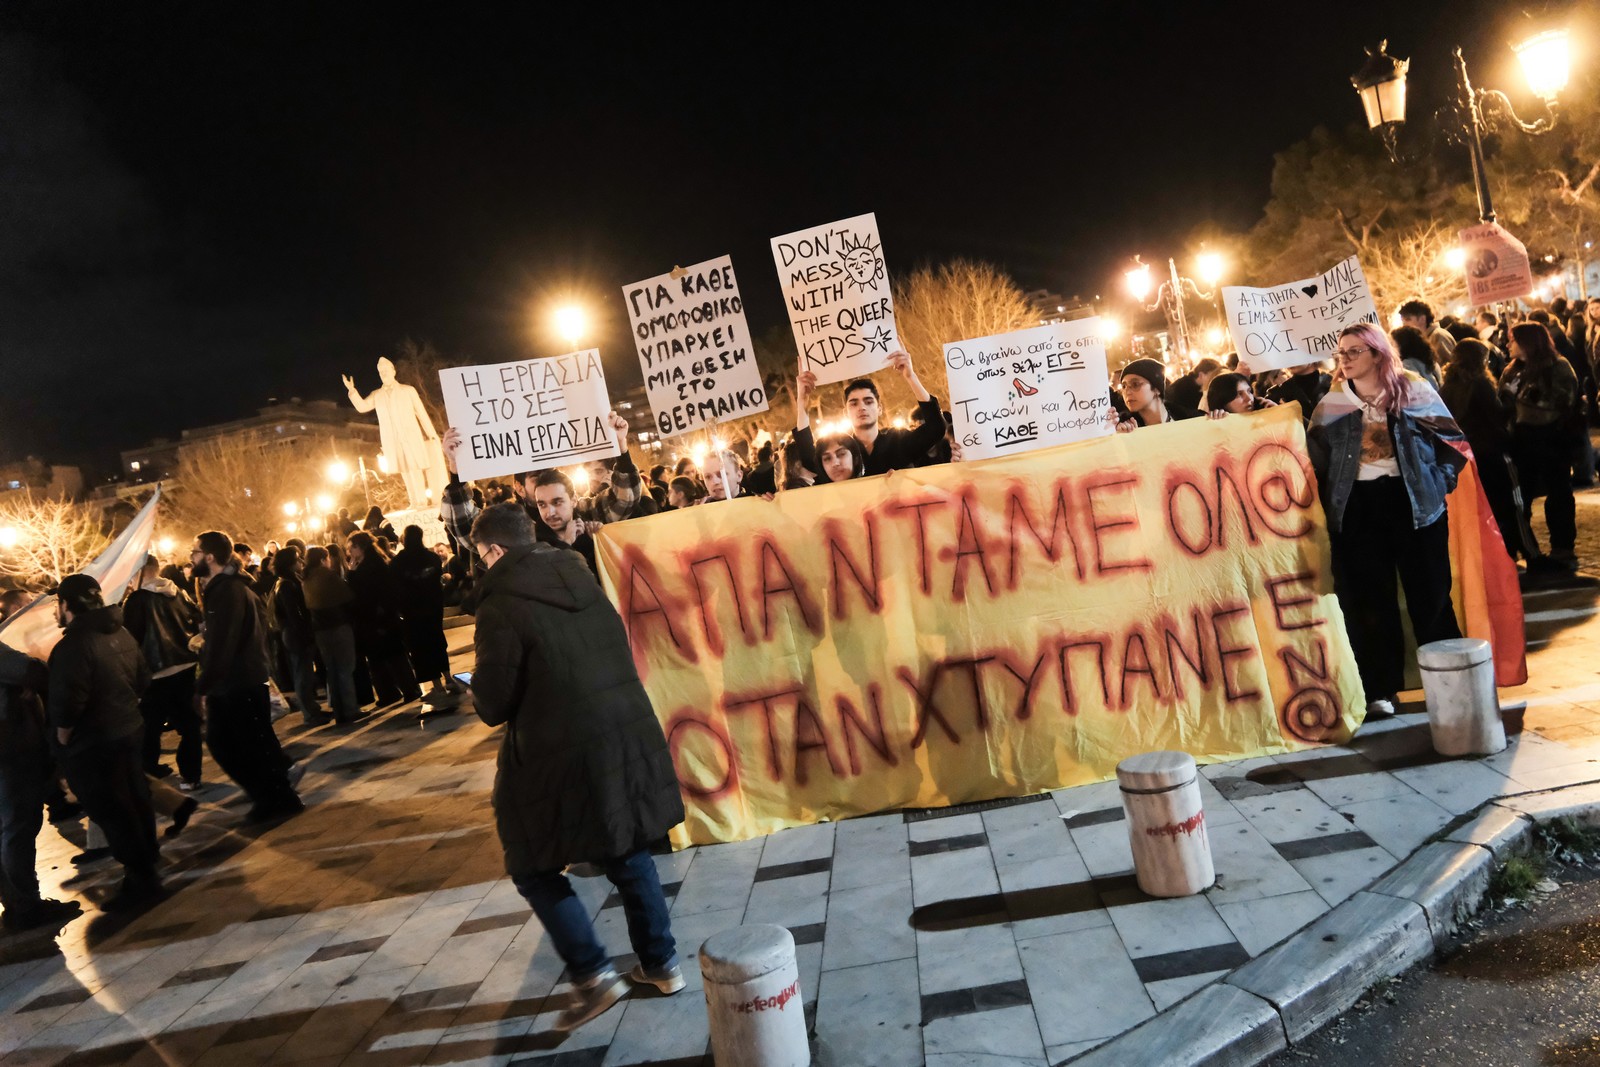 Συγκέντρωση και πορεία κατά της ομοφοβίας και της τρανσοφοβίας, με αφορμή την επίθεση σε queer άτομα στην πλατεία Αριστοτέλους, στην Θεσσαλονίκη